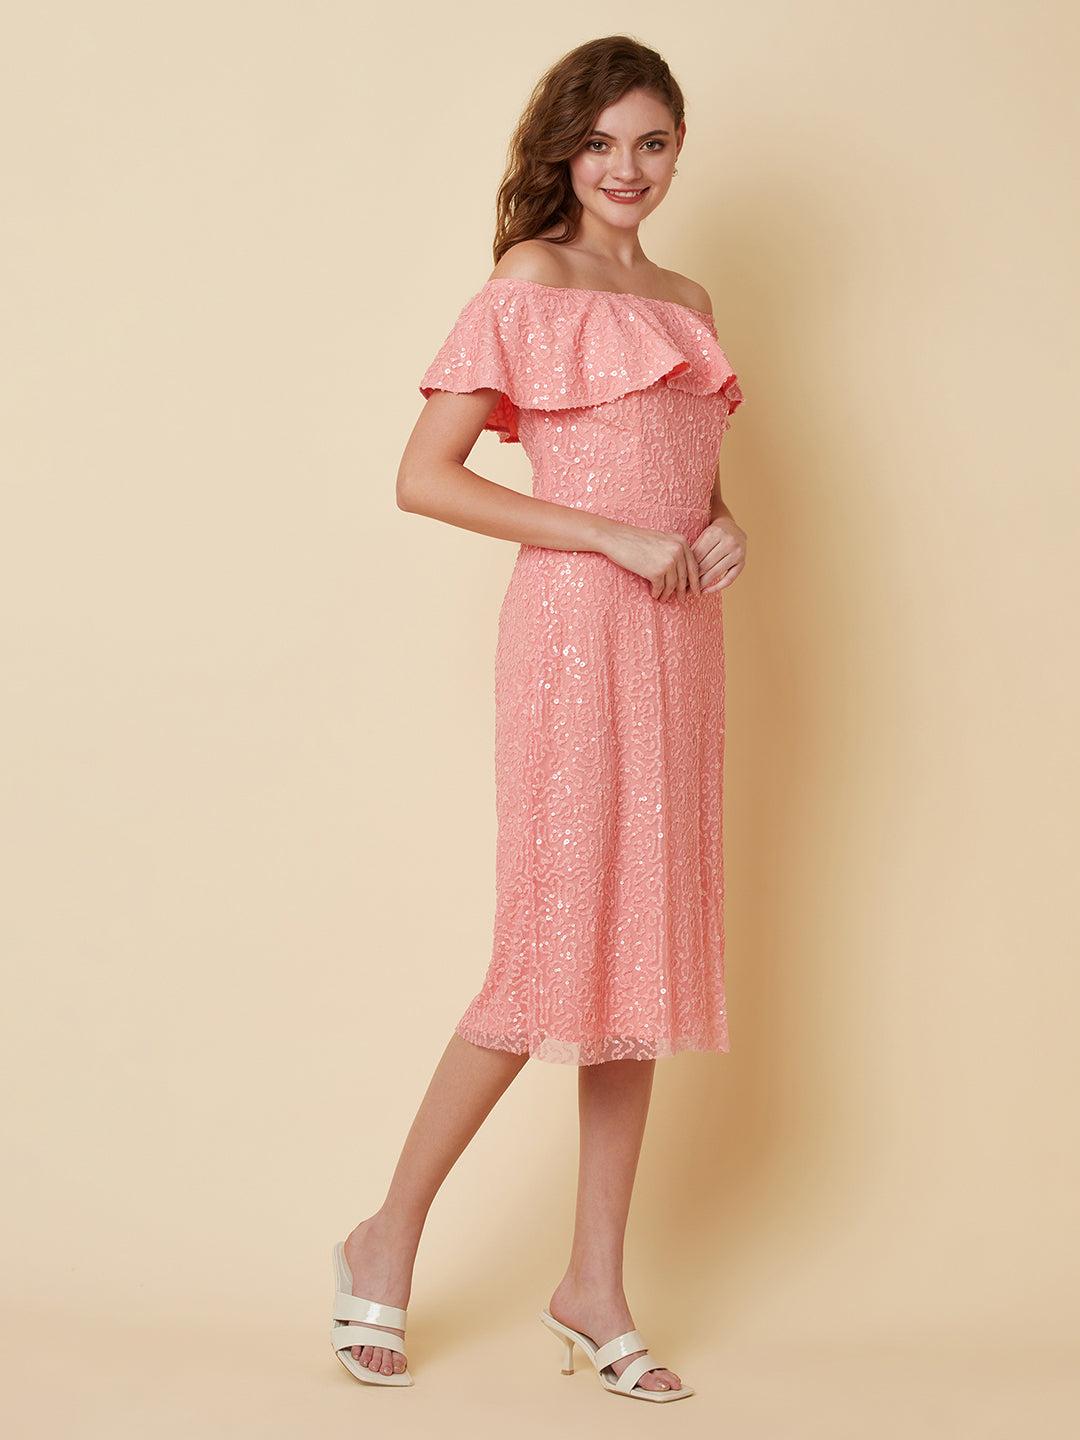 attic curves pink mood sequins dress